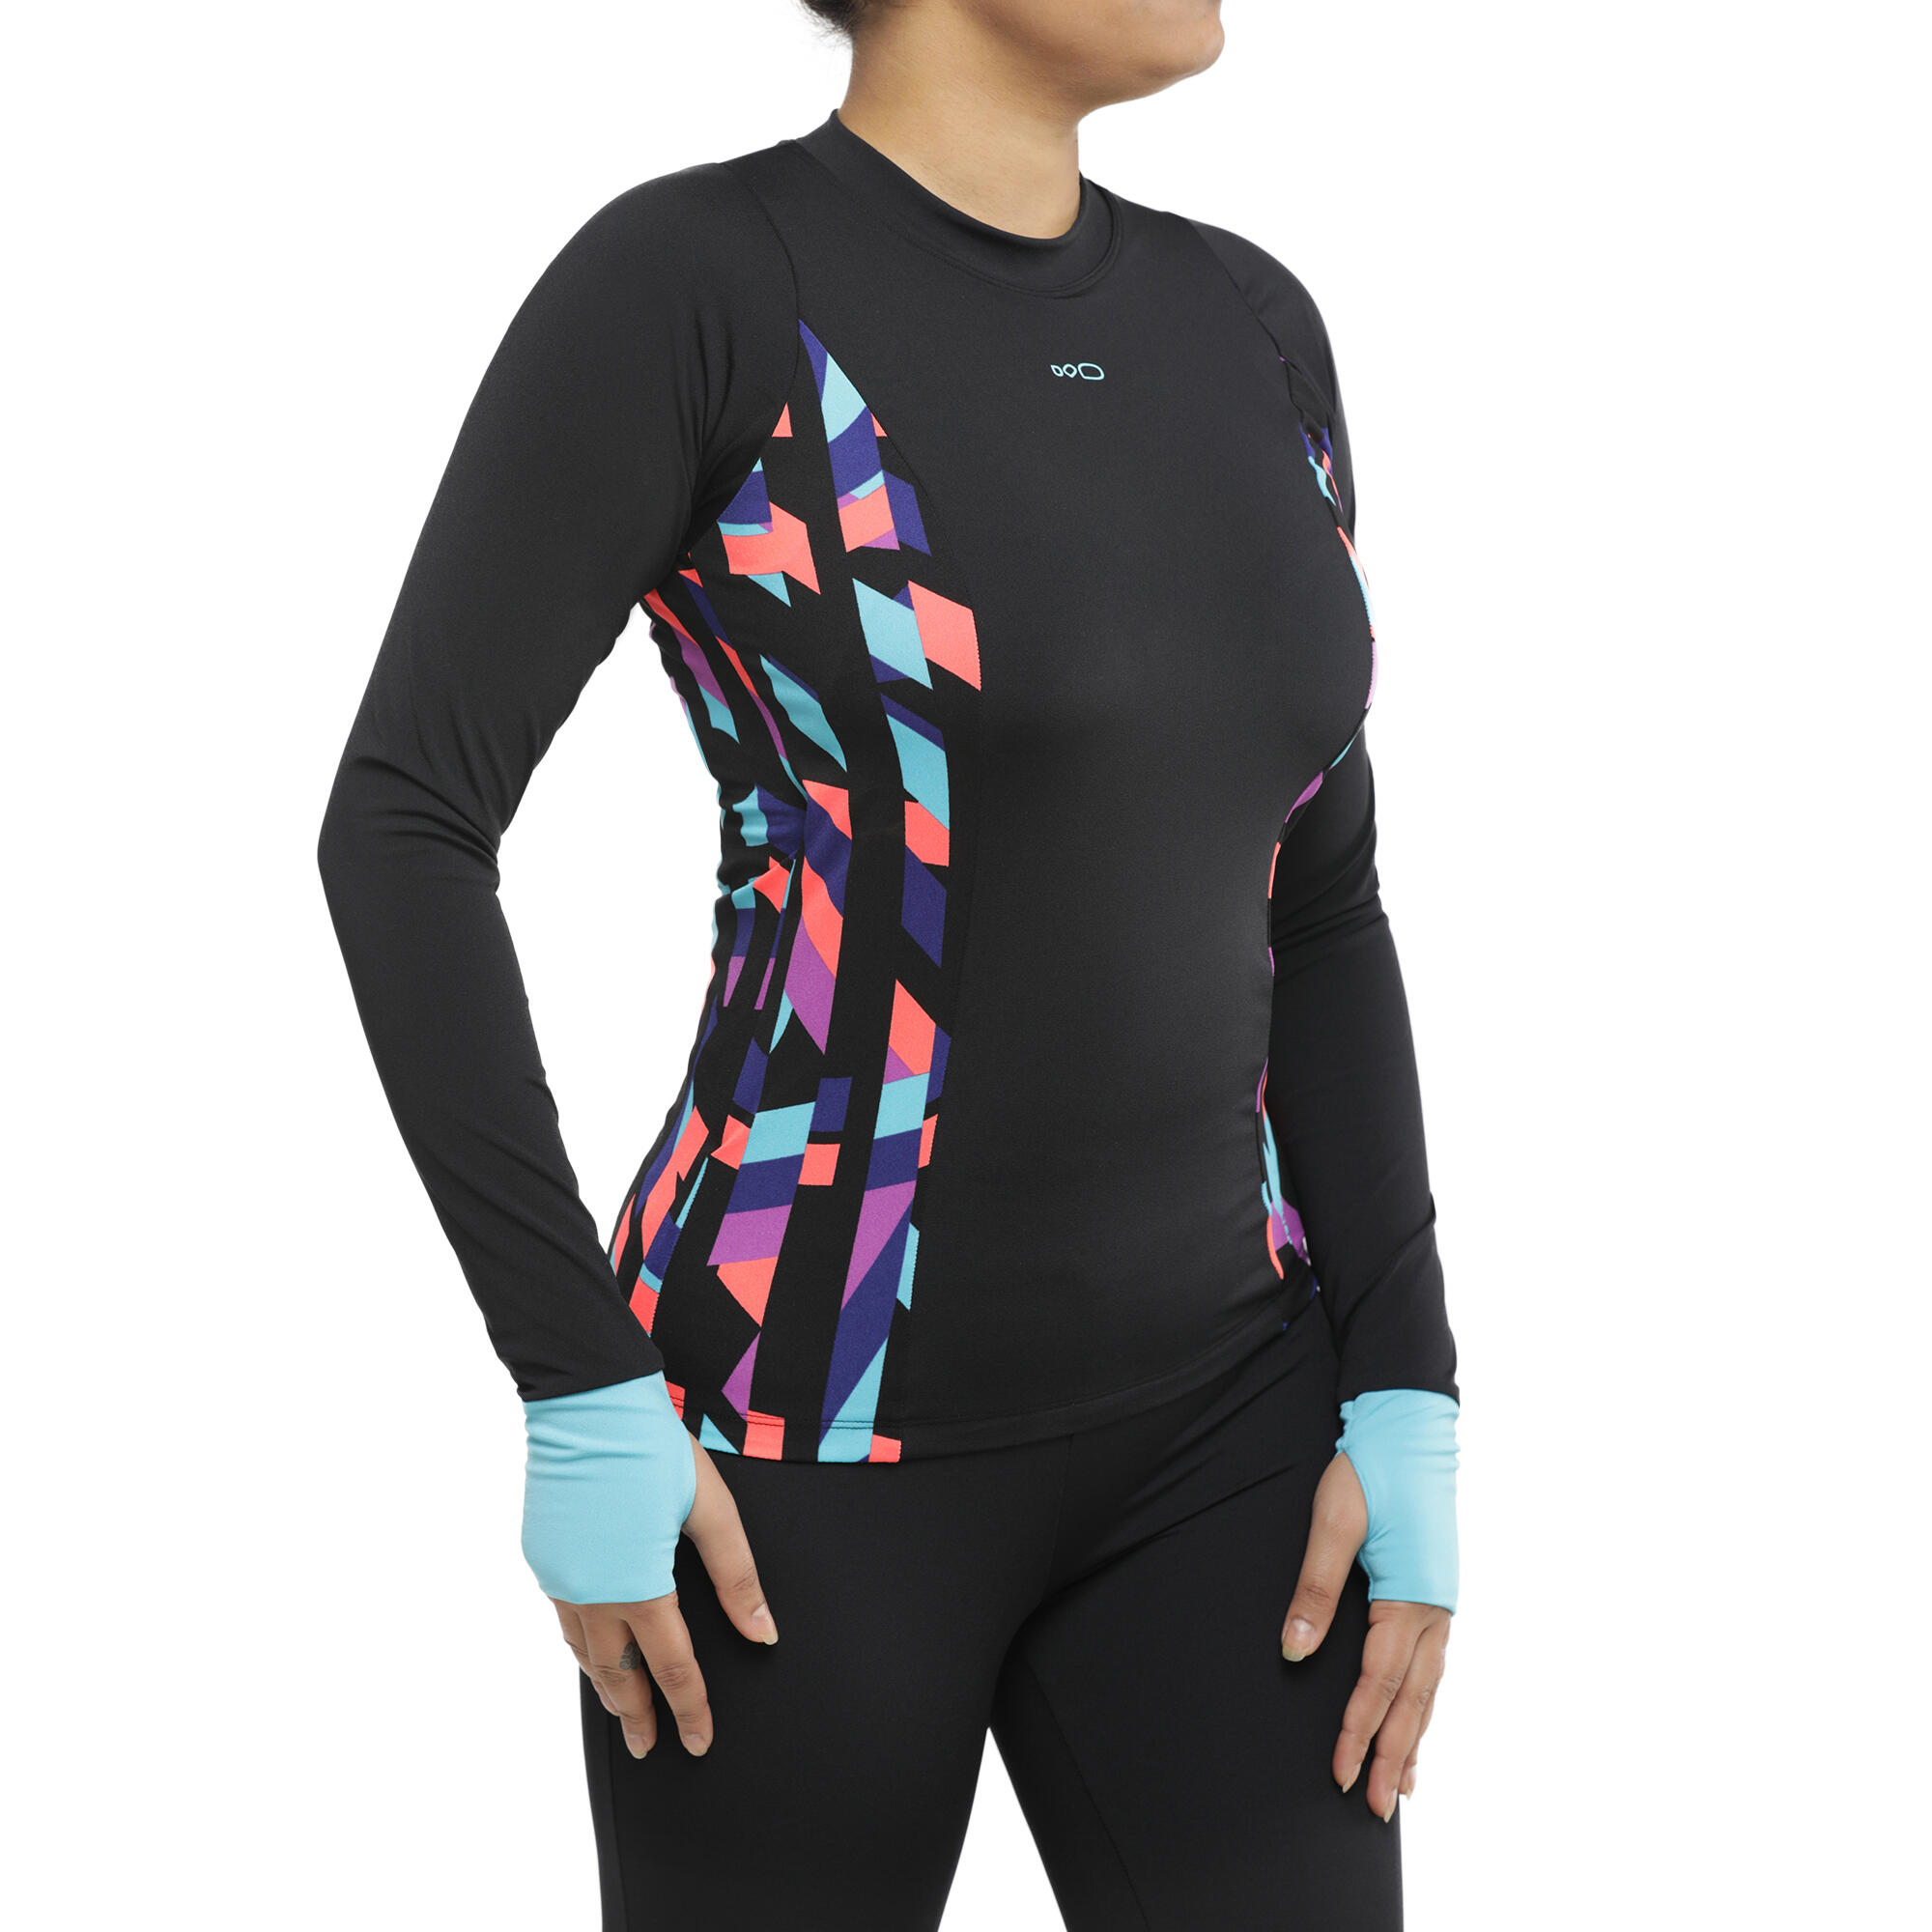 decathlon swimming costume for girl